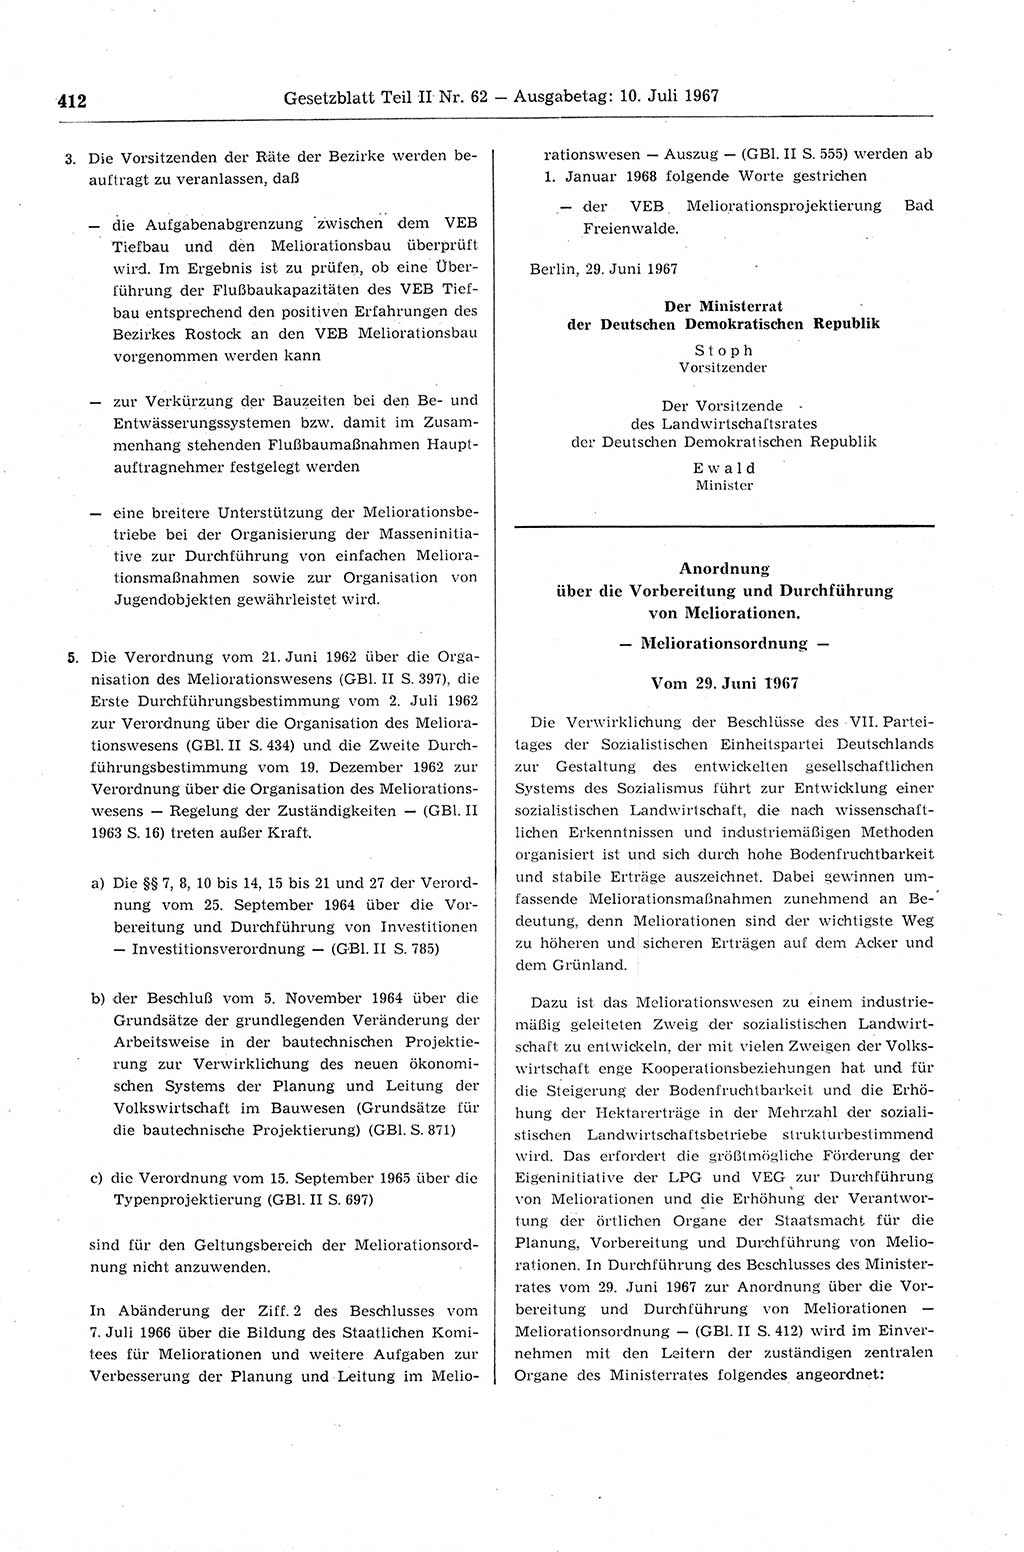 Gesetzblatt (GBl.) der Deutschen Demokratischen Republik (DDR) Teil ⅠⅠ 1967, Seite 412 (GBl. DDR ⅠⅠ 1967, S. 412)